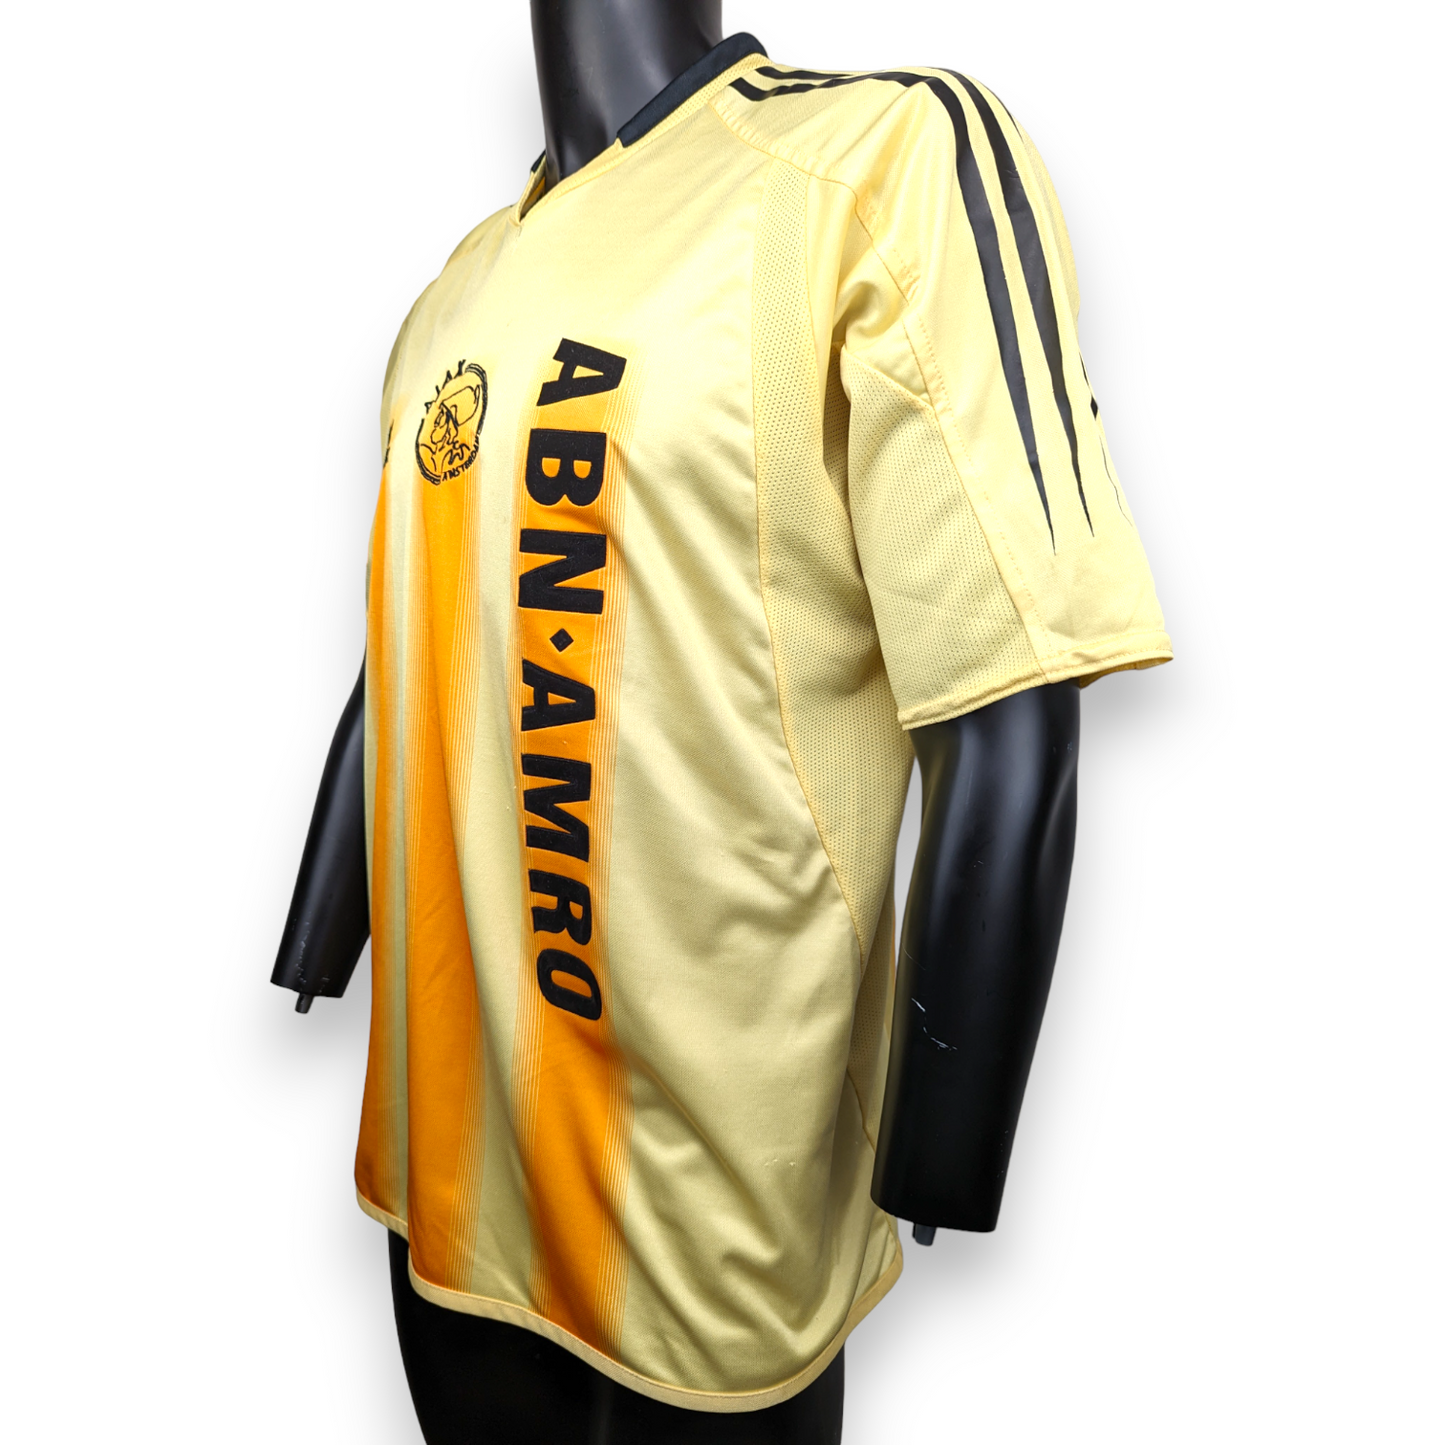 Adidas Ajax Amsterdam 2004/05 Away Van Der Vaart #10 Football Shirt Jersey Men Size XL